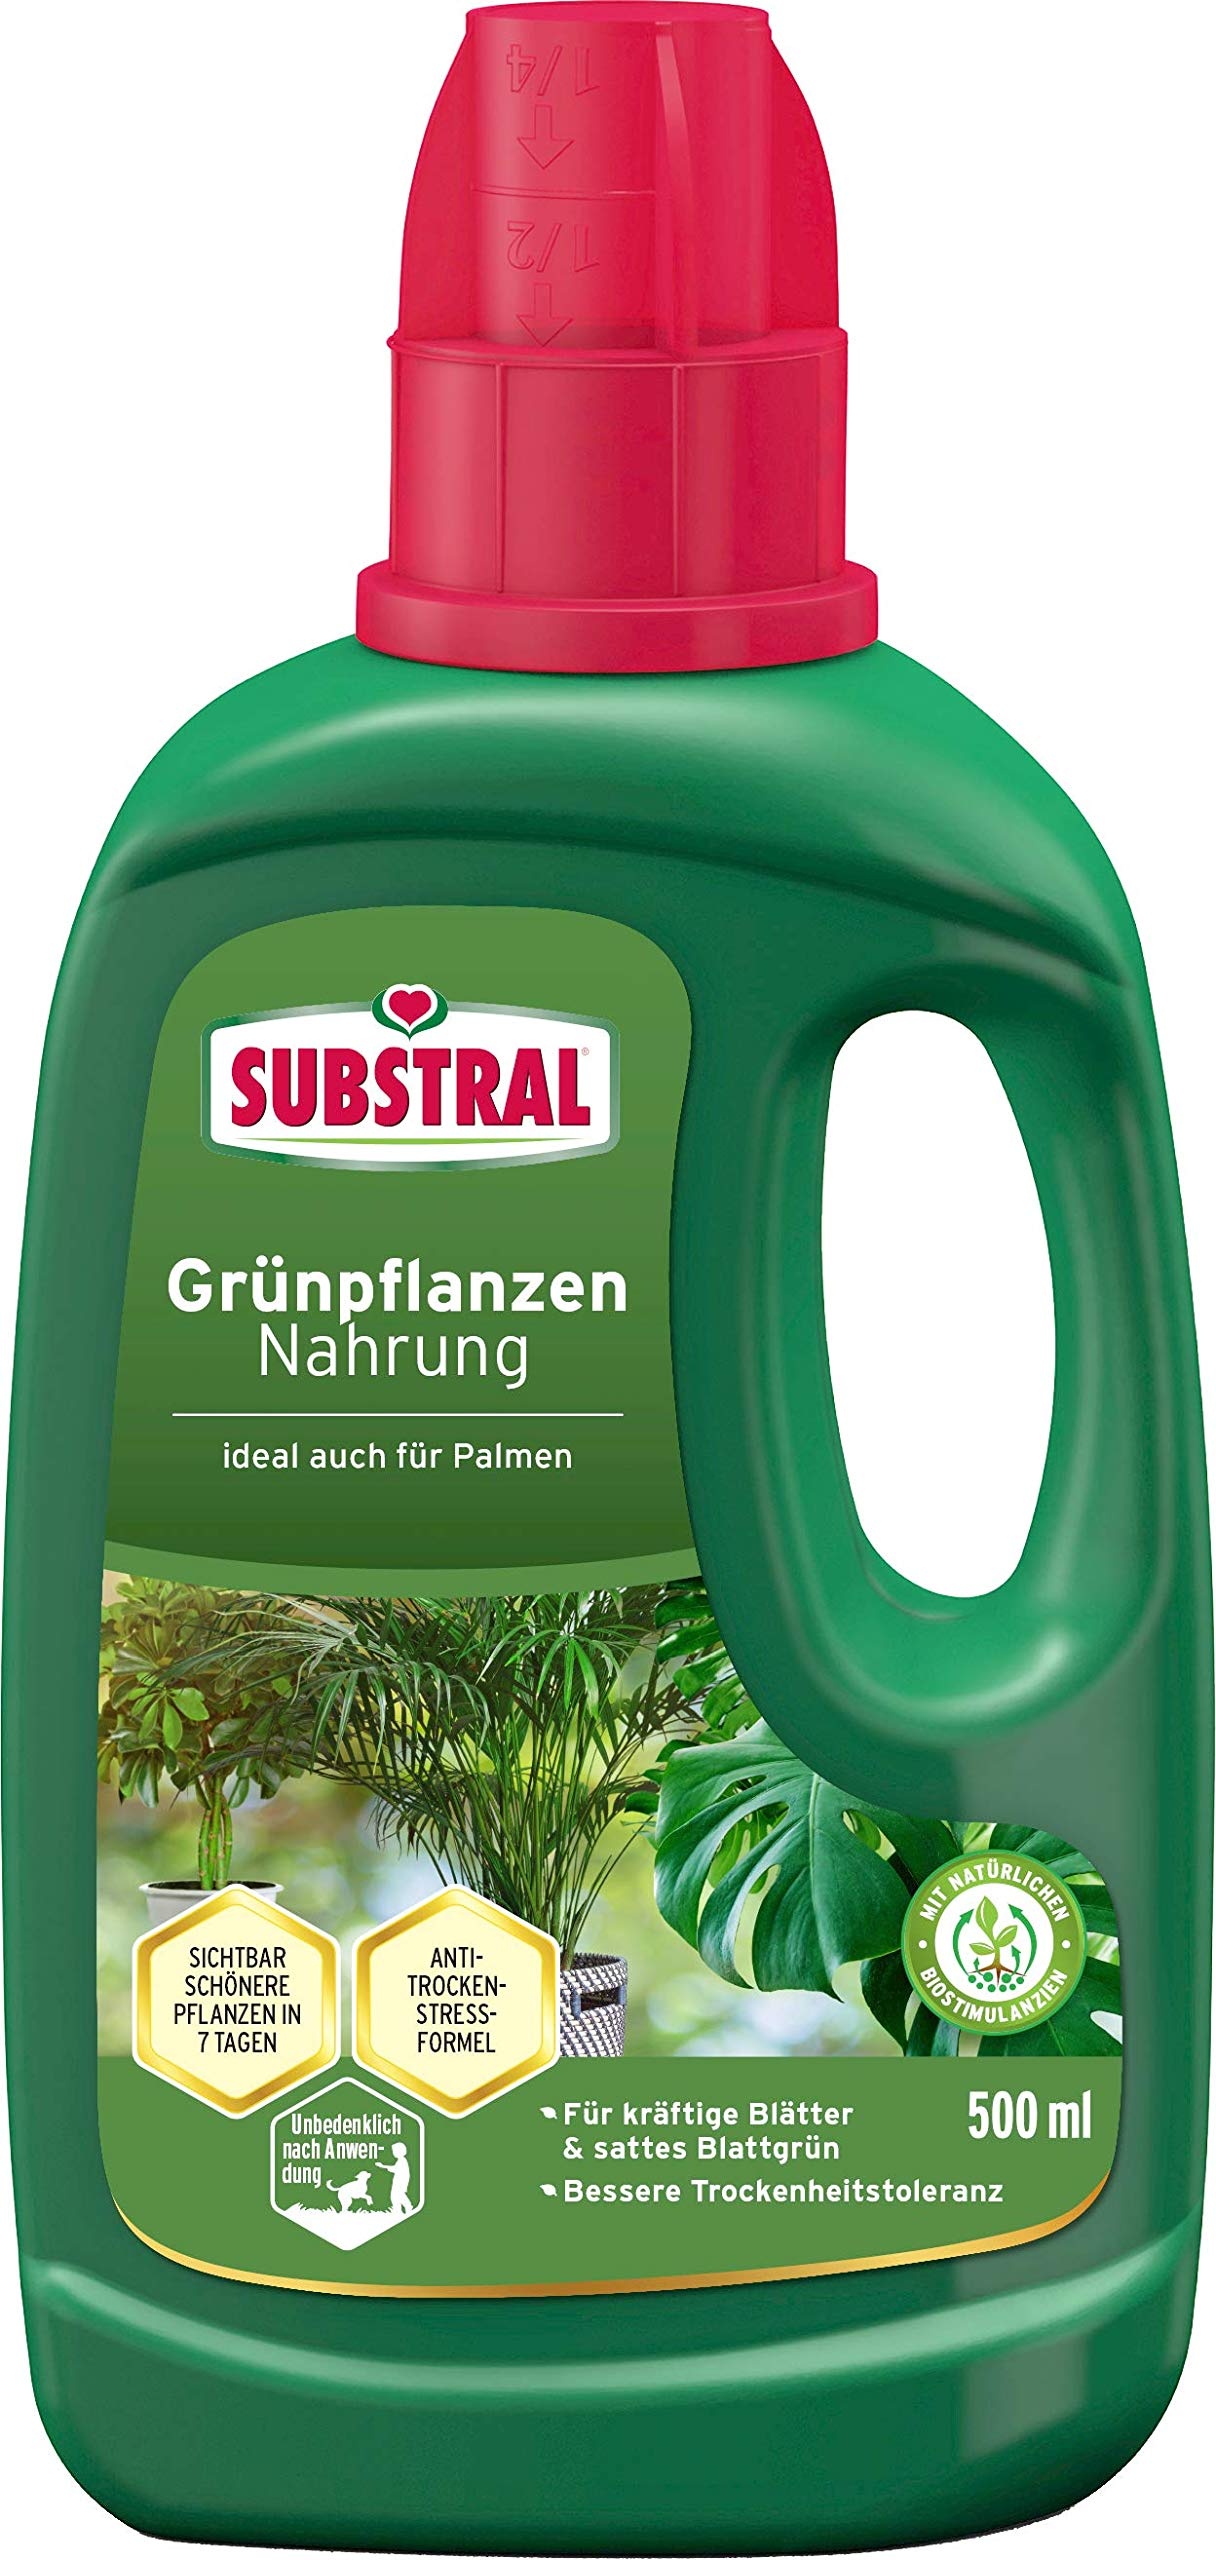 Bild Grünpflanzen Nahrung, Qualitäts-Flüssigdünger für alle Grünpflanzen, mit natürlichen Biostimulanzien, 500 ml